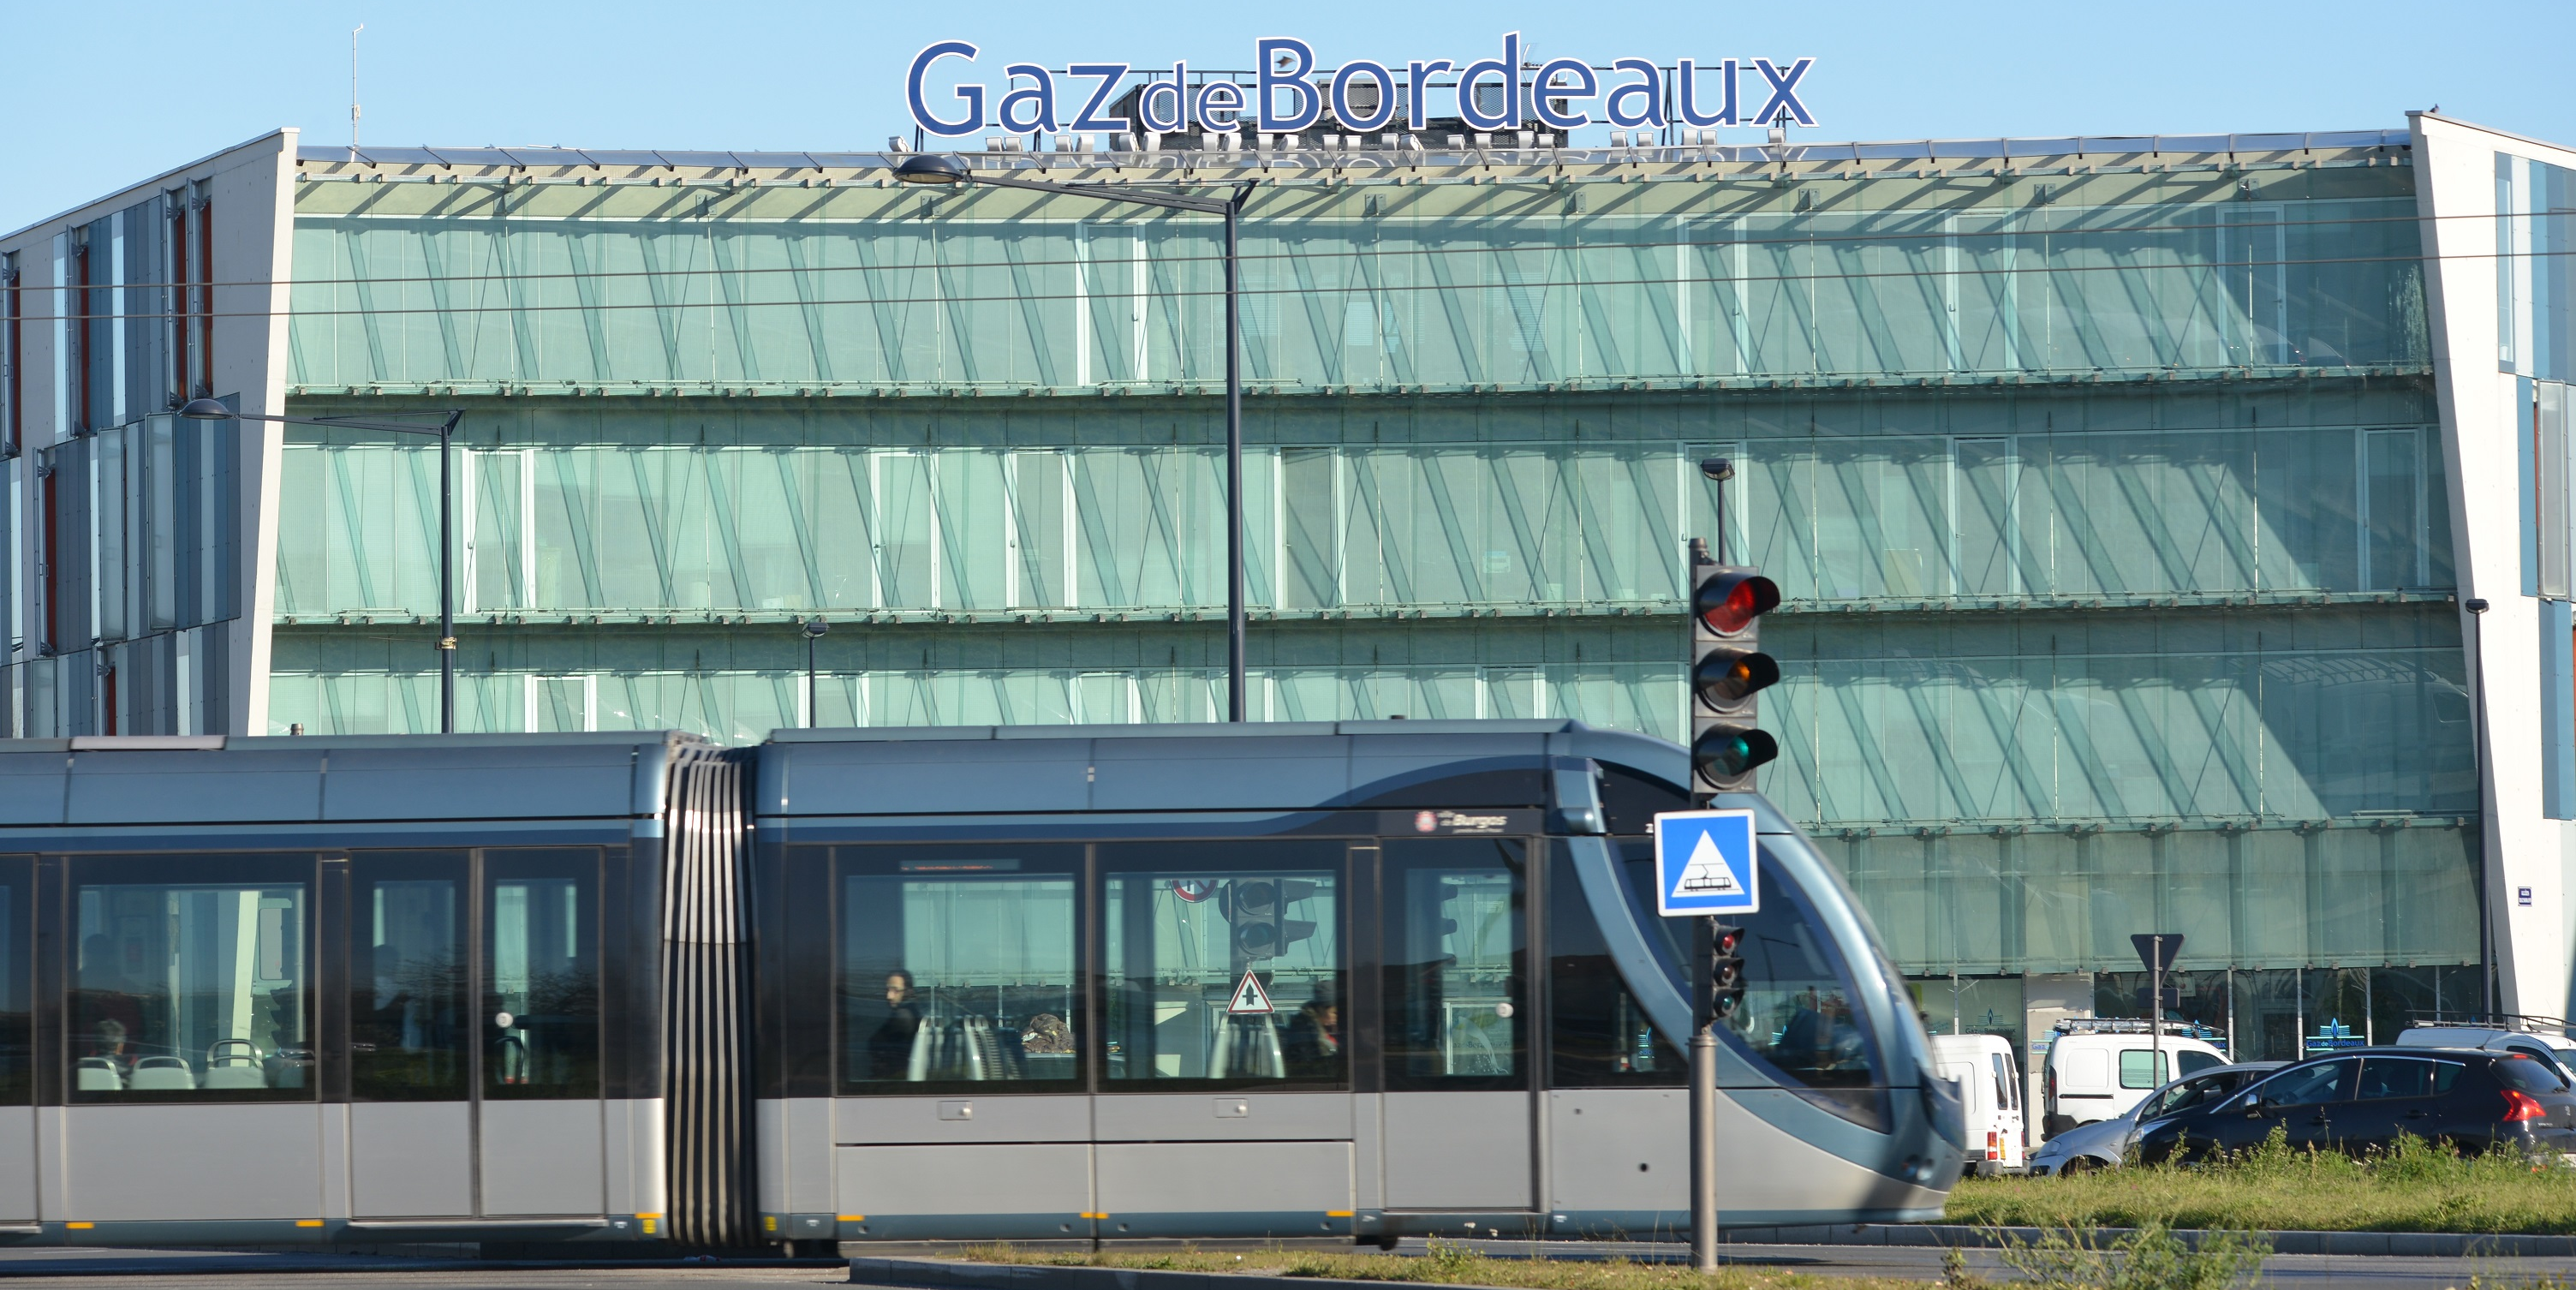 Flambée des prix : le régulateur de l'énergie demande à Gaz de Bordeaux de revoir ses tarifs